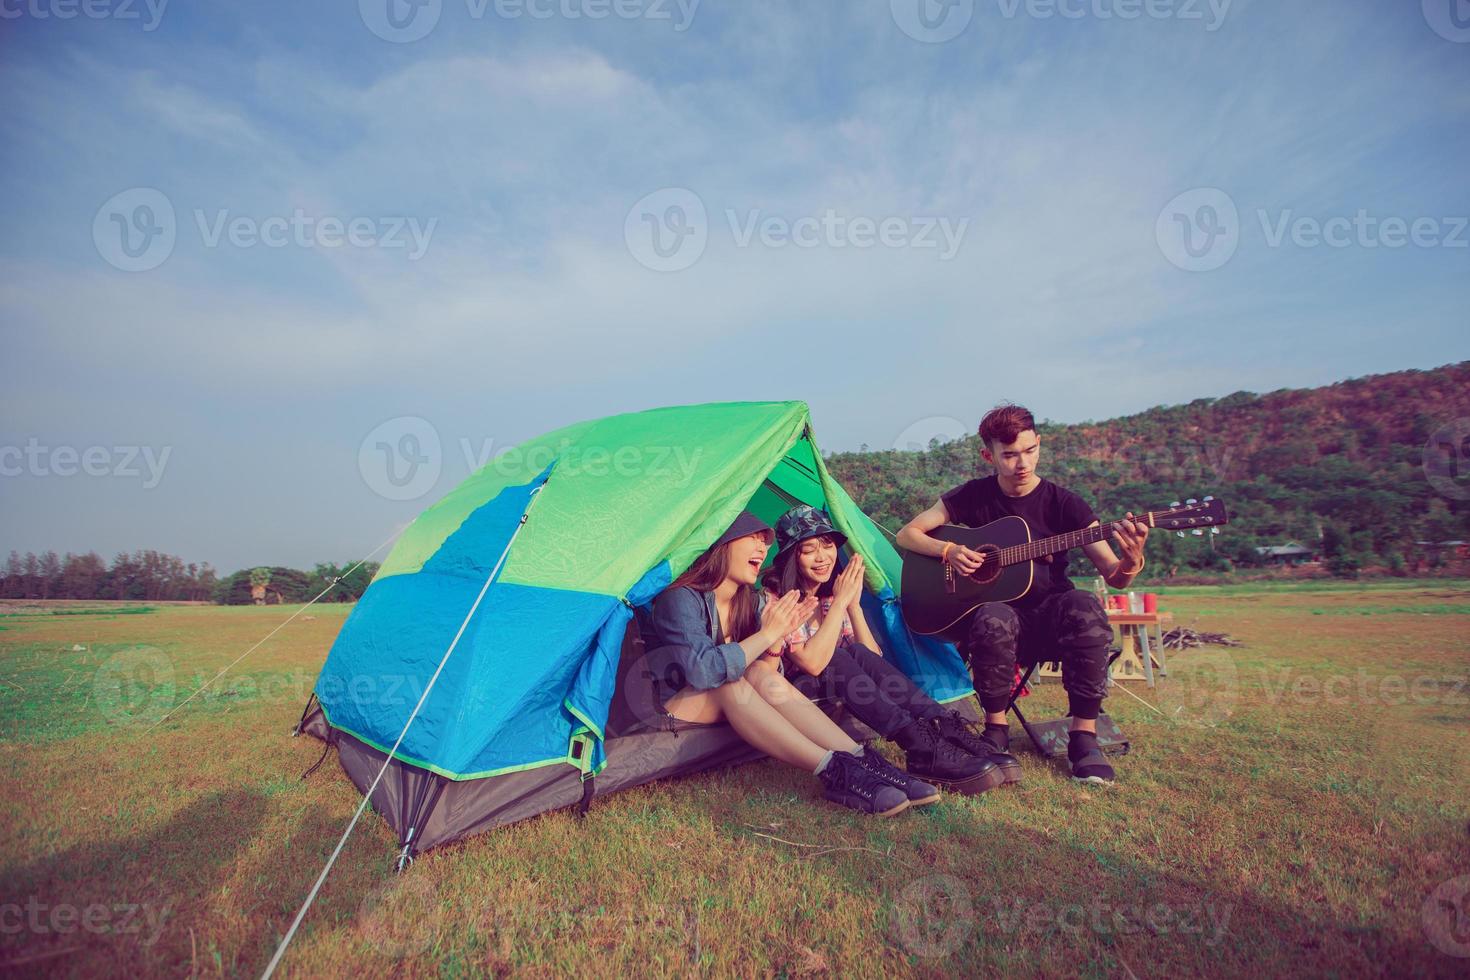 un grupo de amigos asiáticos turistas bebiendo y tocando la guitarra juntos con felicidad en verano mientras acampan cerca del lago al atardecer foto